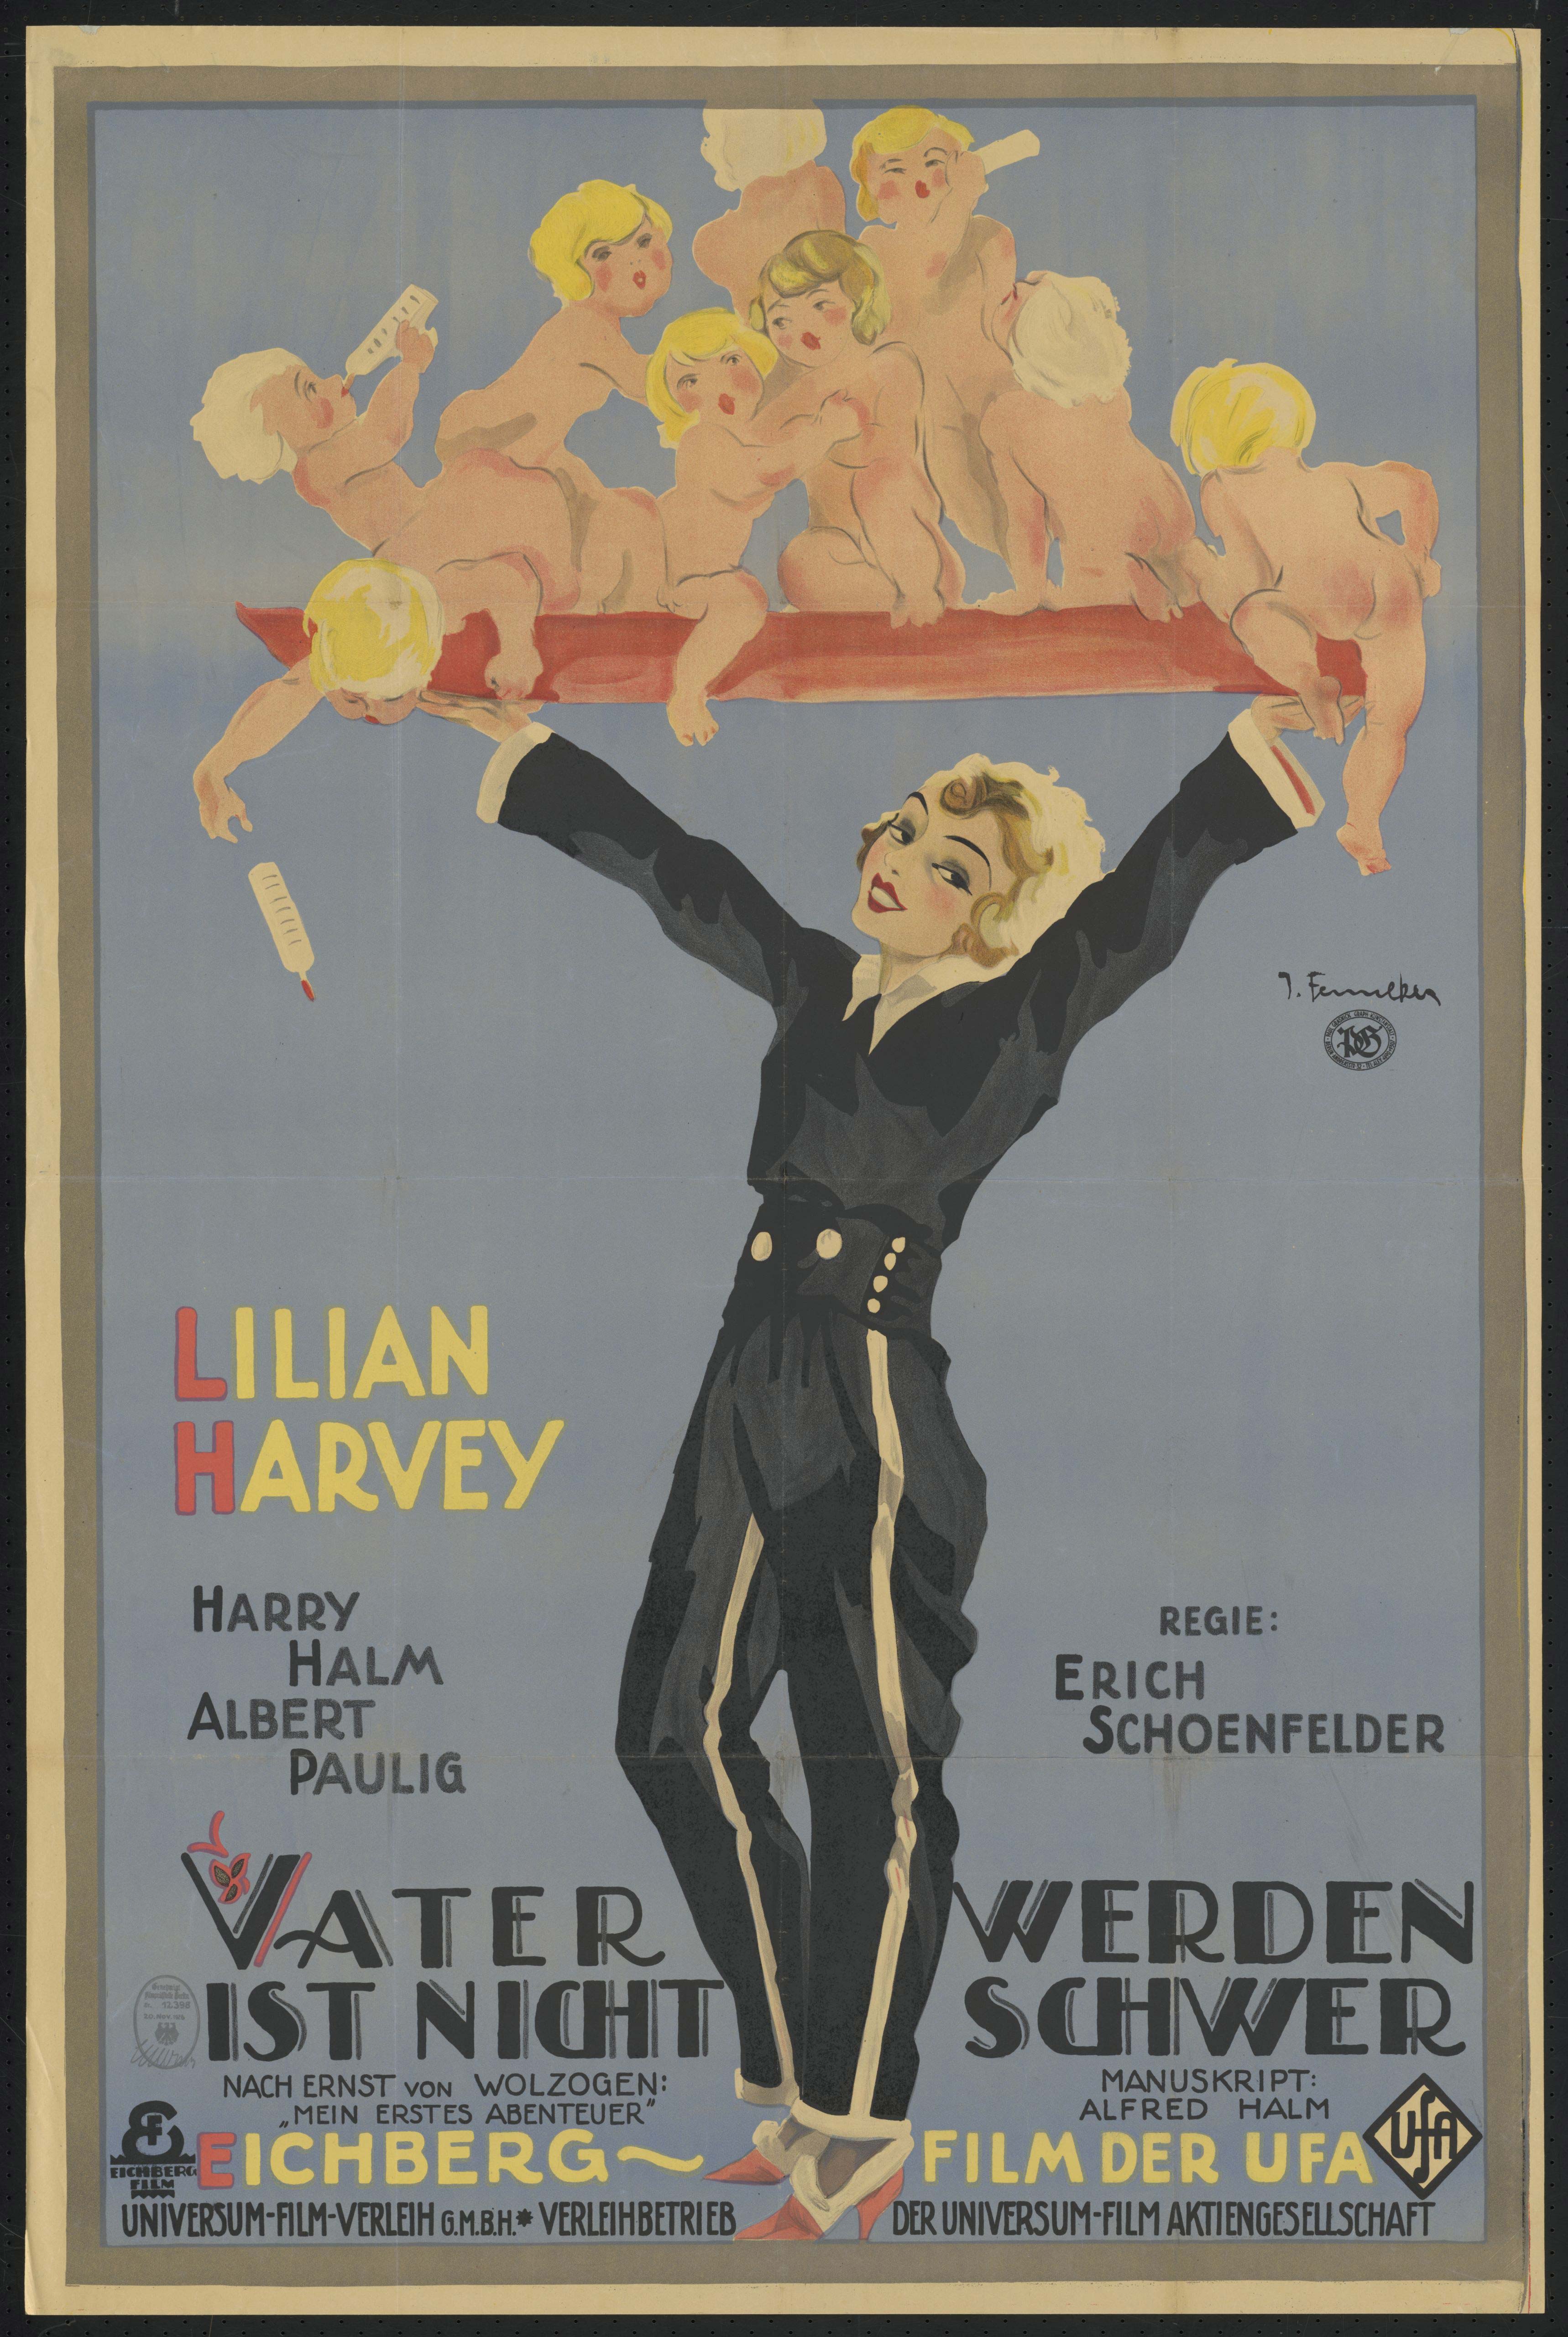 Film poster by Joef Fenneker: Vater werden ist nicht schwer…, Germany 1926, directed by Erich Schönfelder